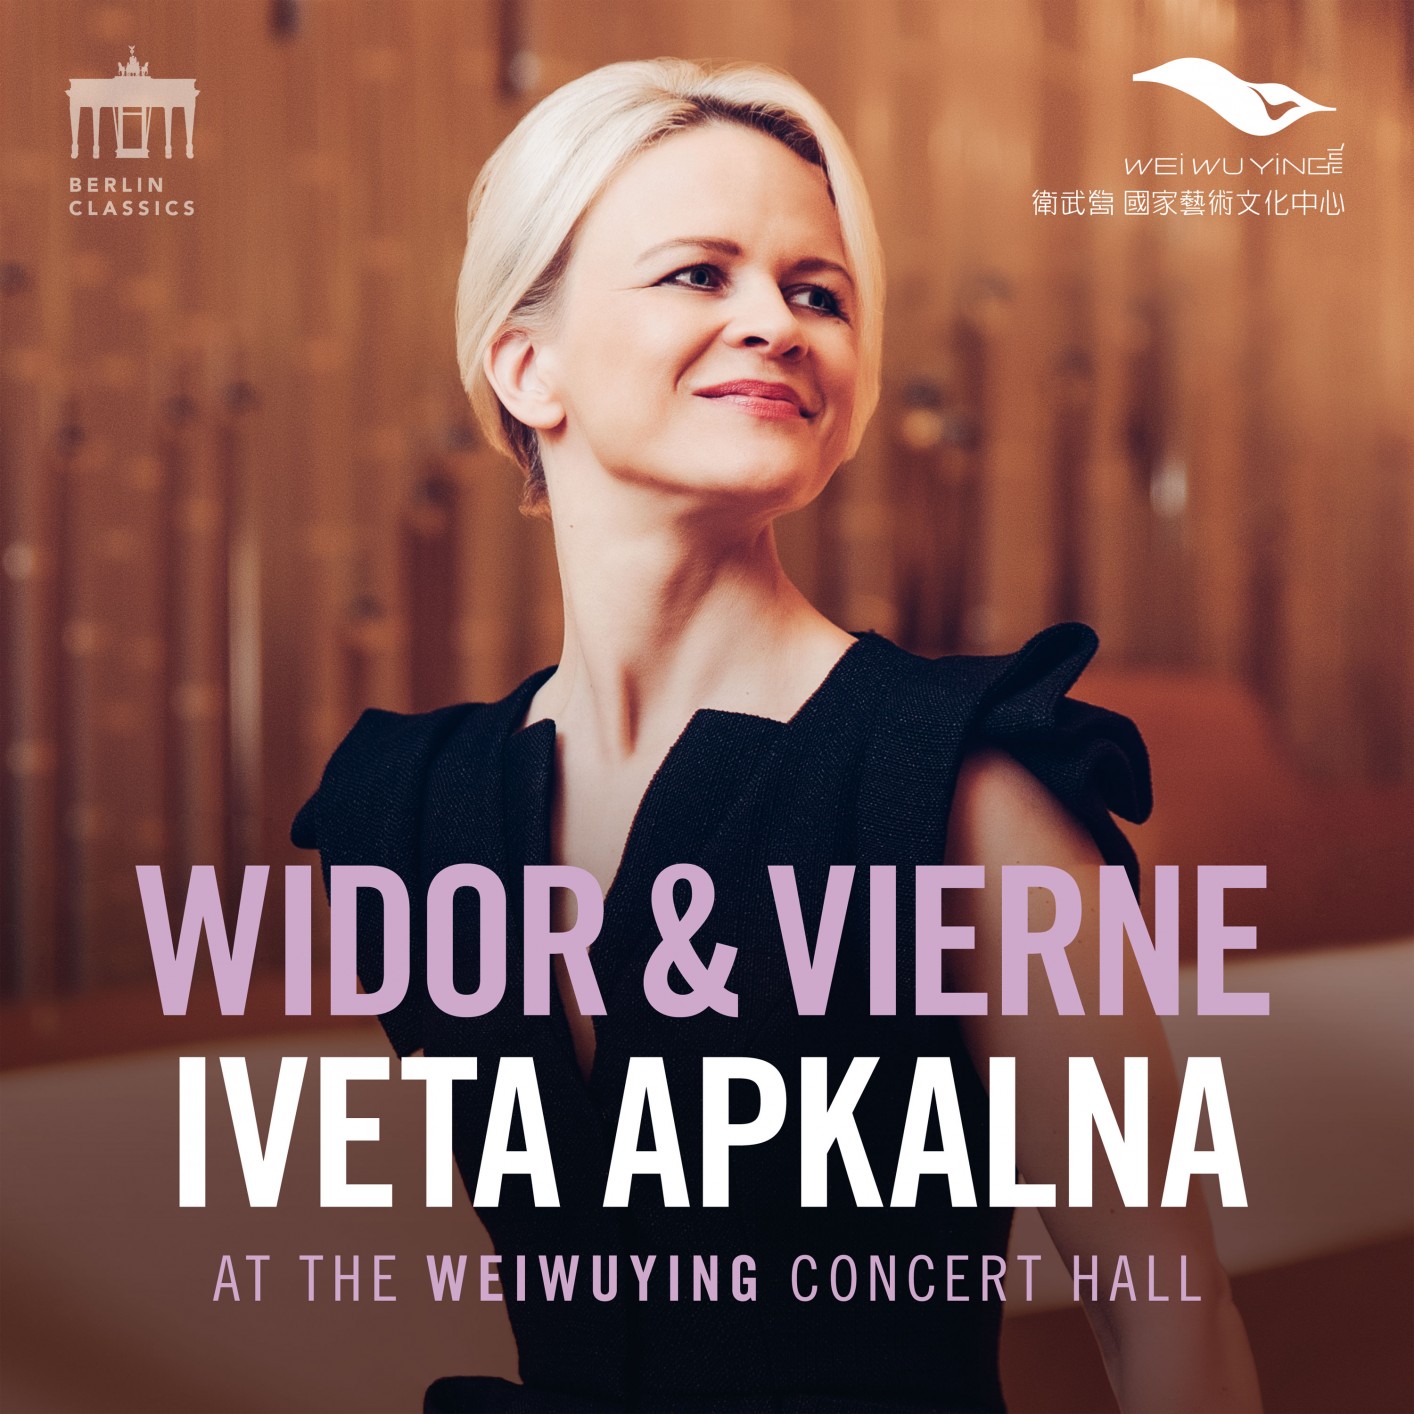 Iveta Apkalna – Widor & Vierne (Iveta Apkalna at the Weiwuying Concert Hall) (2020) [FLAC 24bit/96kHz]